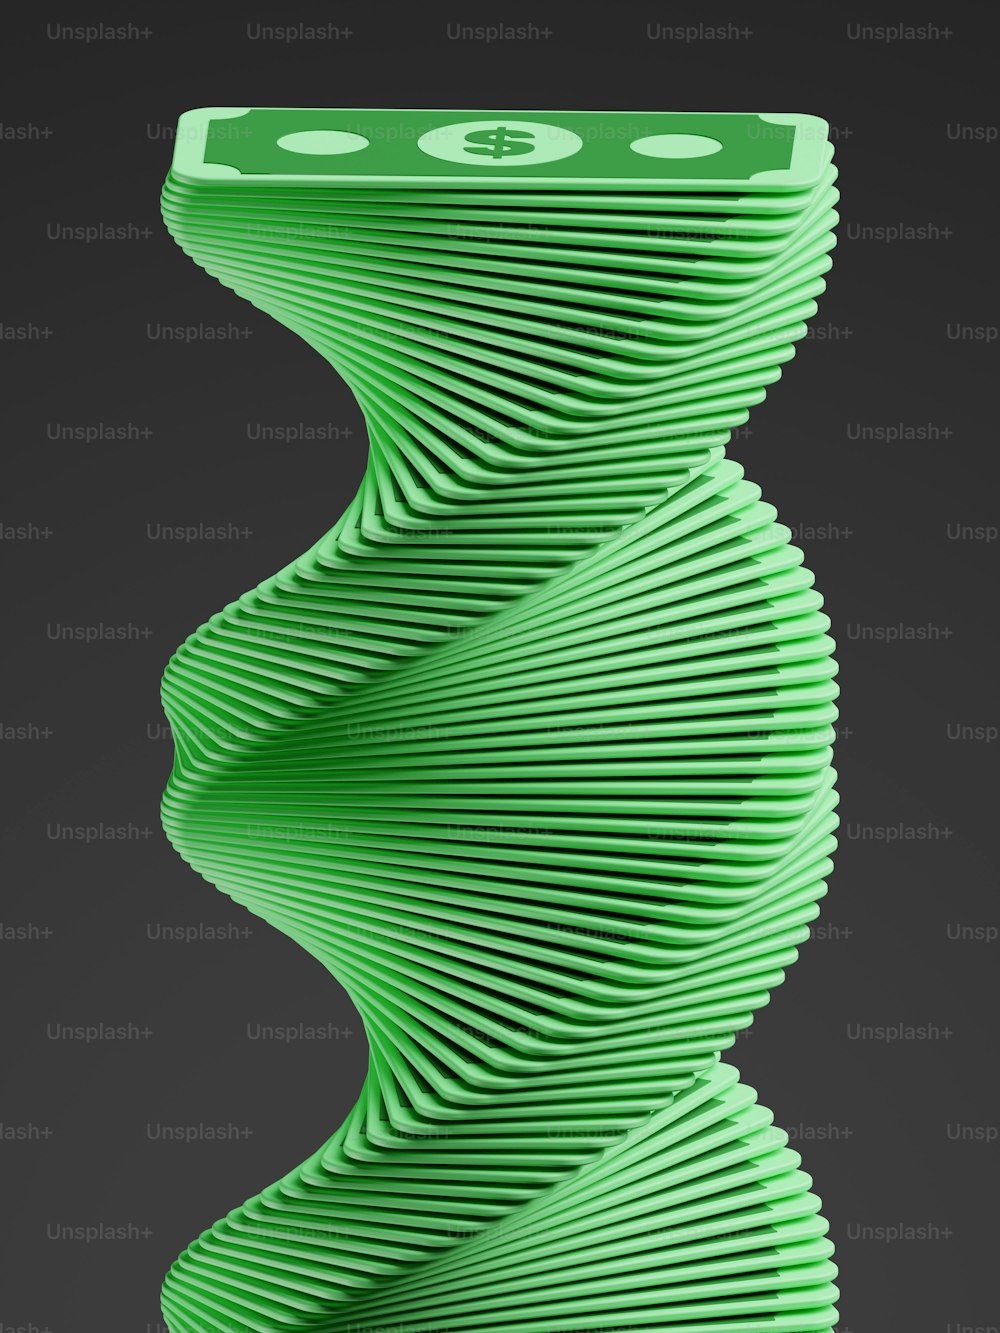 Ein grünes Objekt, das wie eine Spirale aussieht